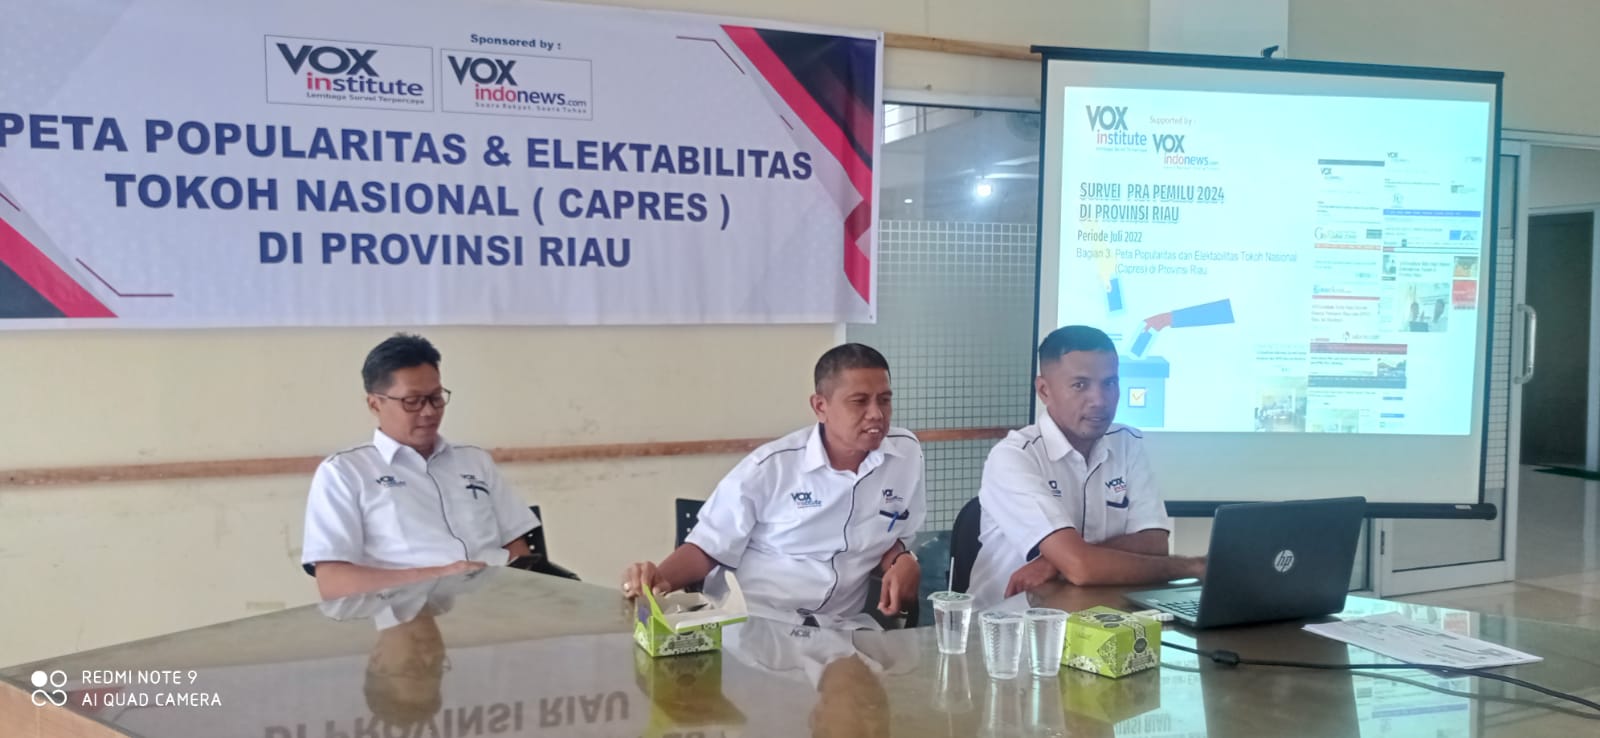 Survei Capres 'VOXinstitute' di Provinsi Riau : Anies, Prabowo, Ganjar Bersaing Ketat